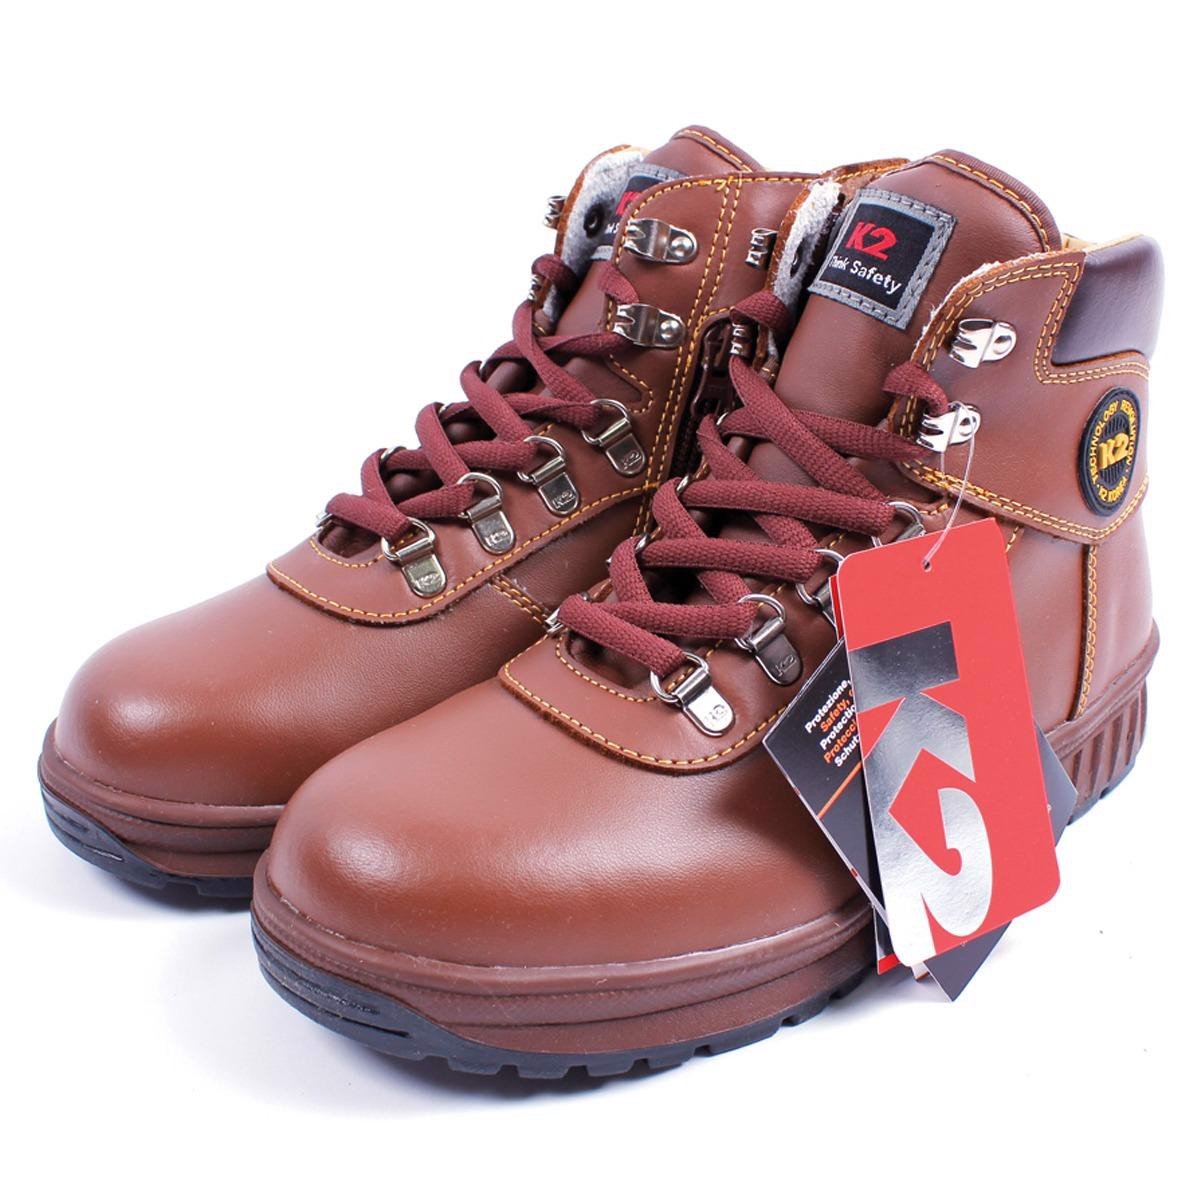 Giày bảo hộ cao cấp K2-14 Hàn Quốc – Bảo Hộ Bình An